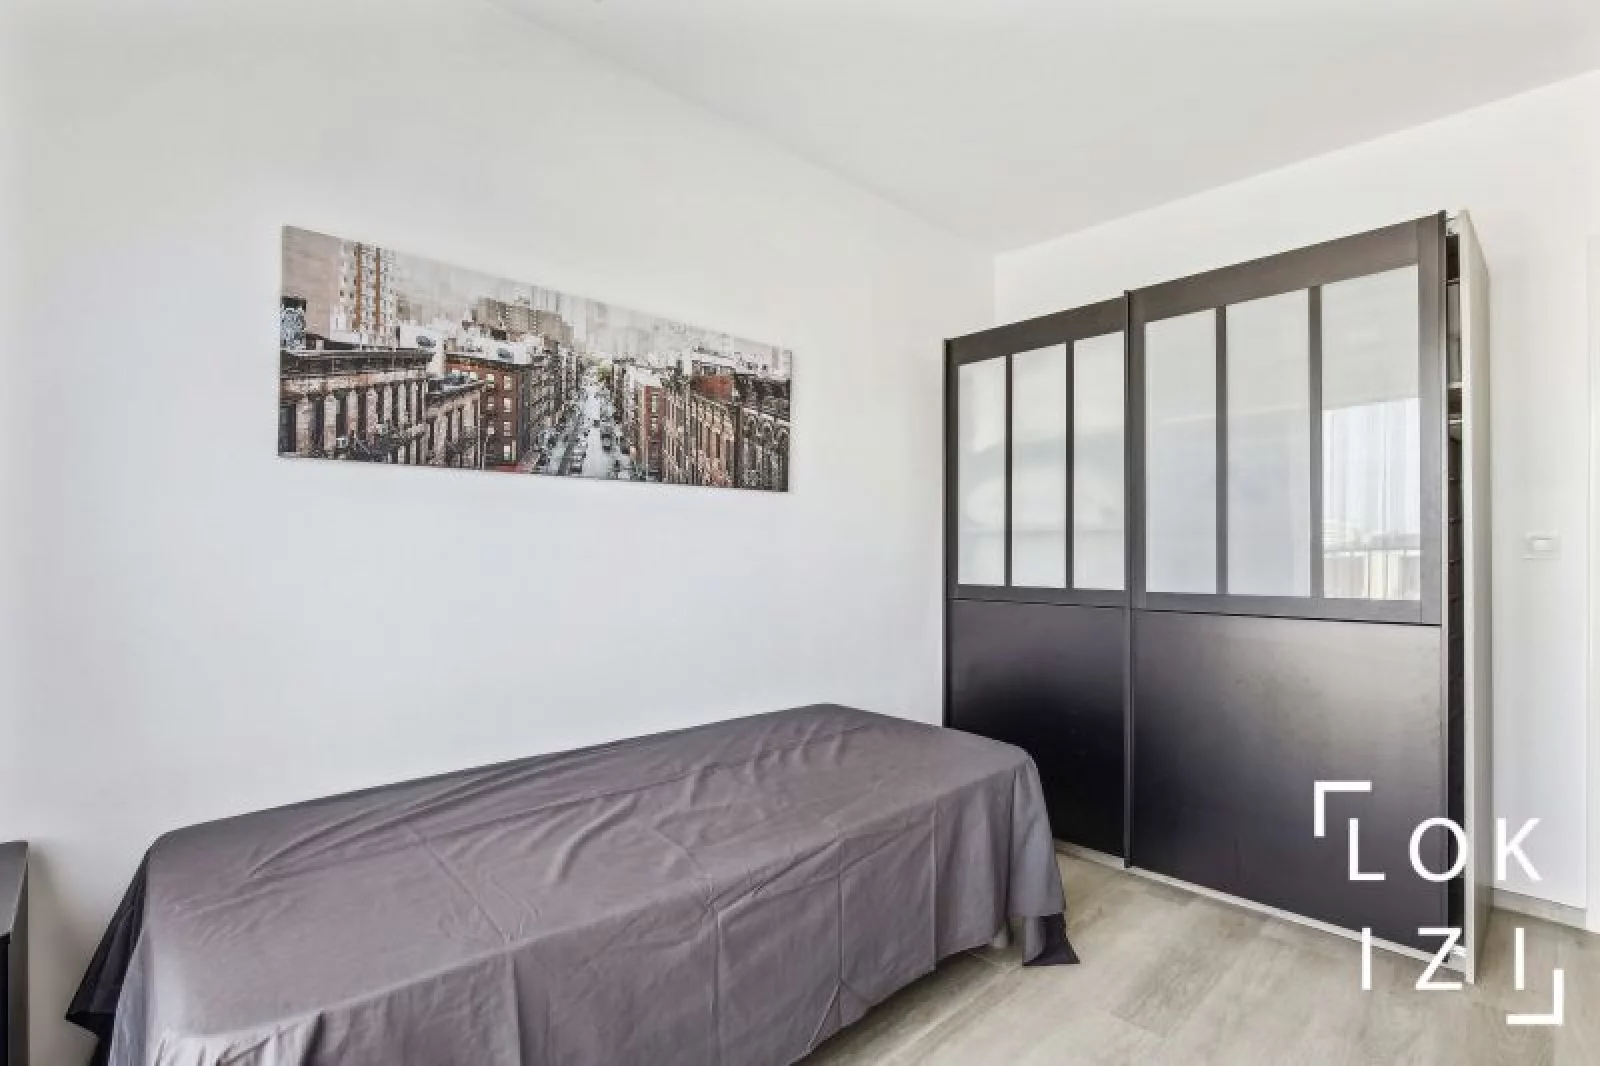  Location appartement meublé 3 pièces 70m² (Paris ouest / Rueil-Malmaison 92)